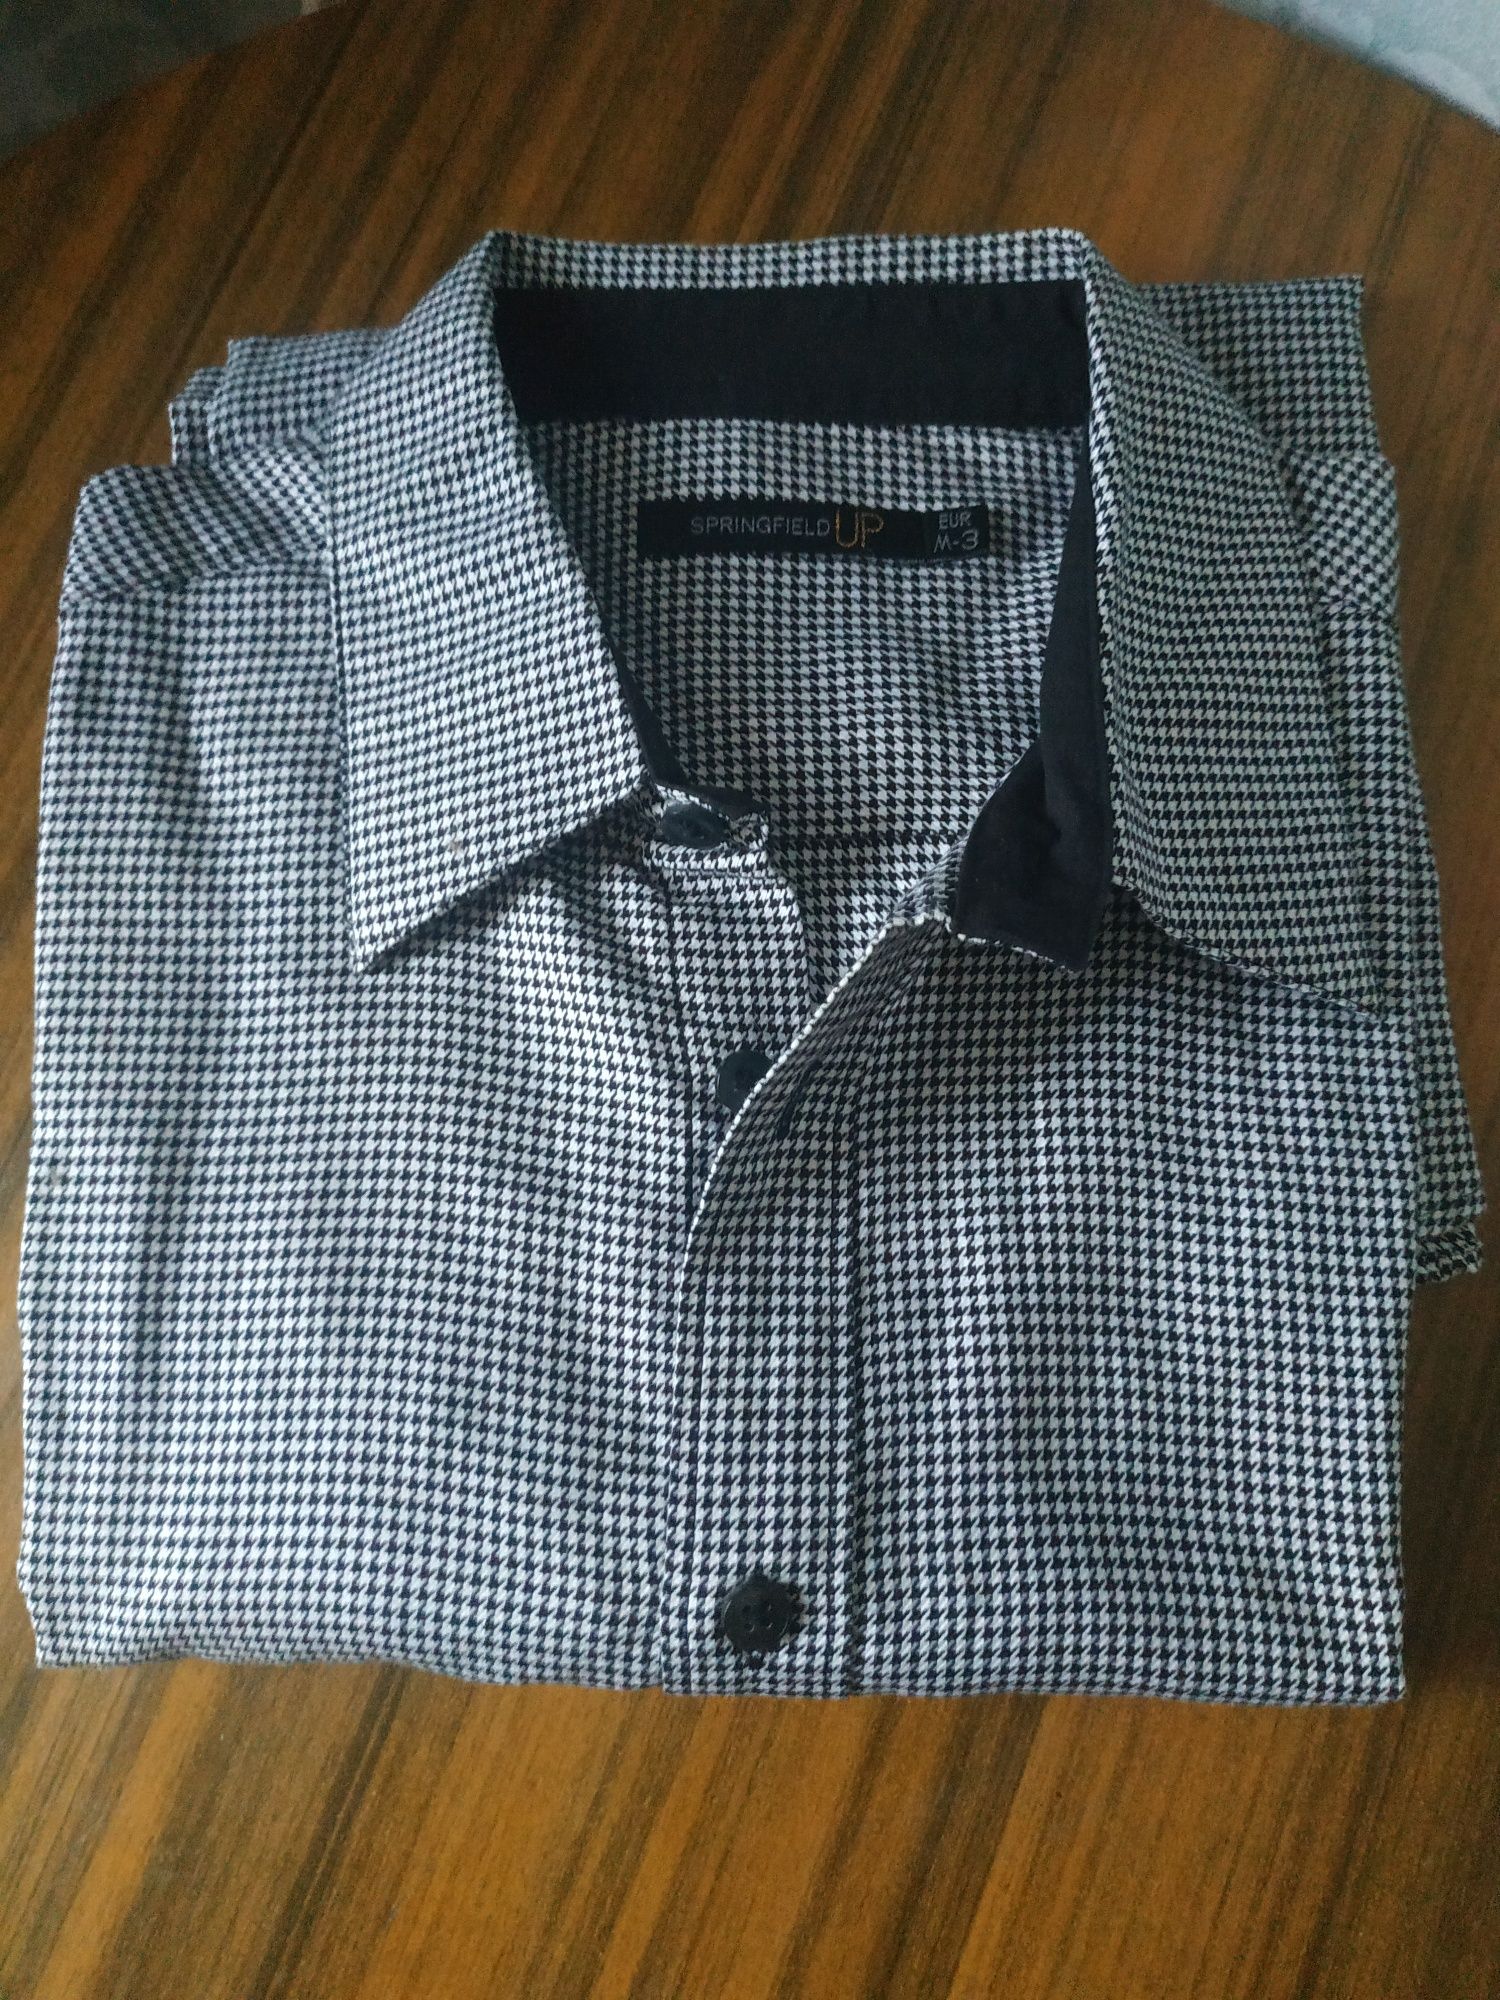 Рубашка унисекс р 46, модный принт